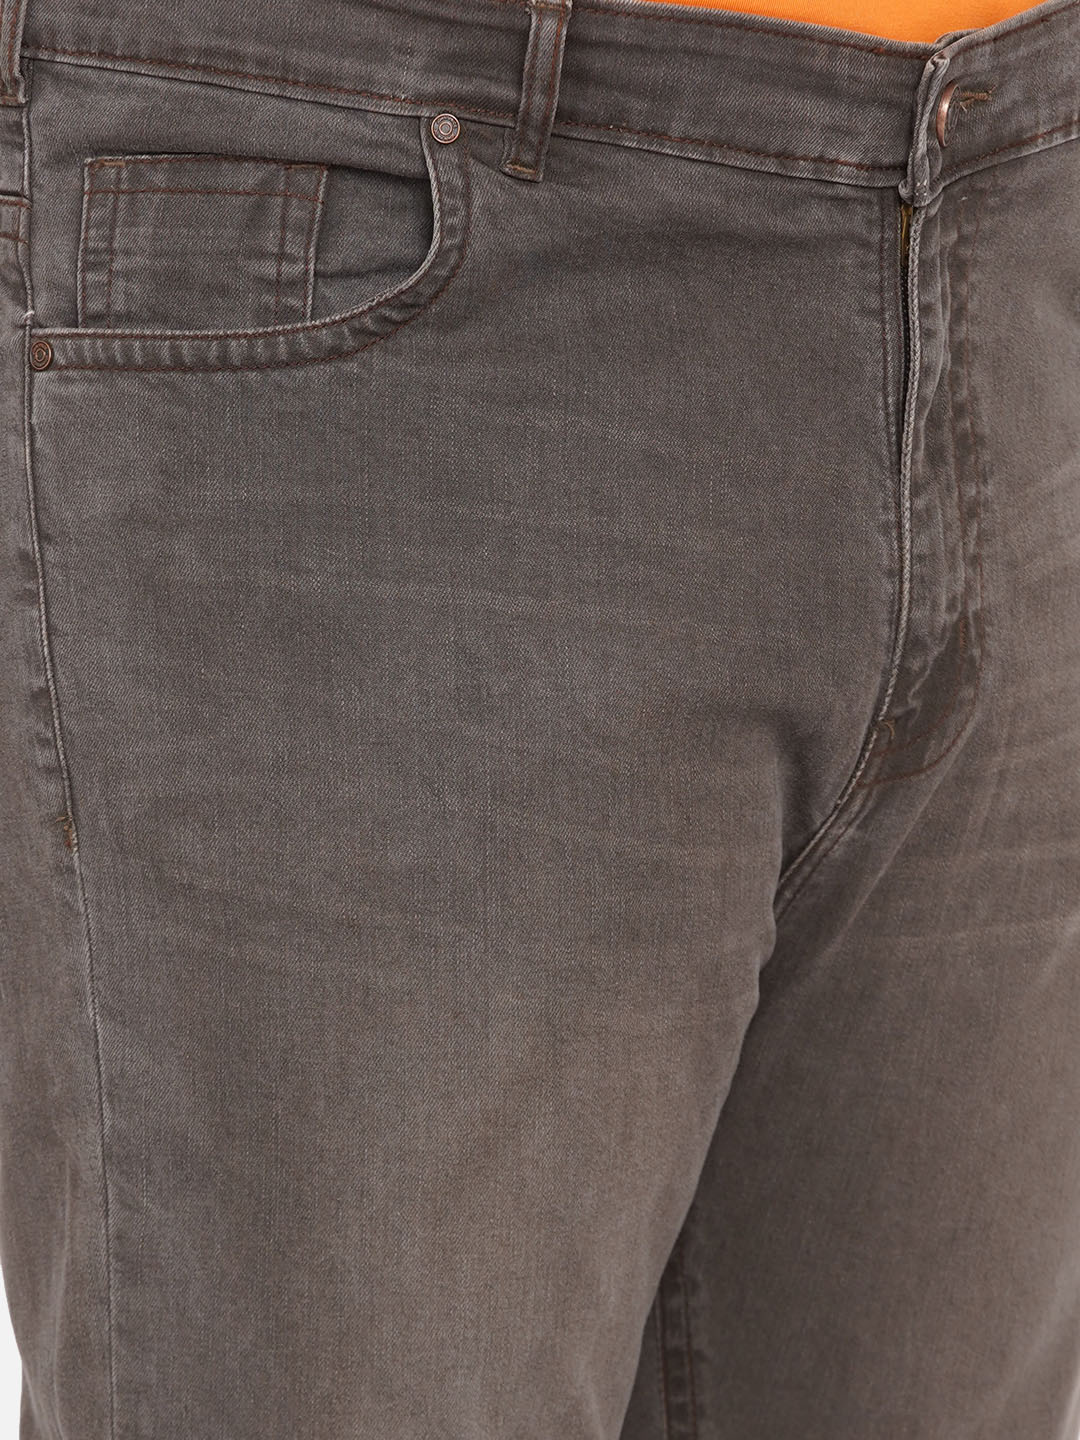 bottomwear/jeans/JPJ12259/jpj12259-2.jpg